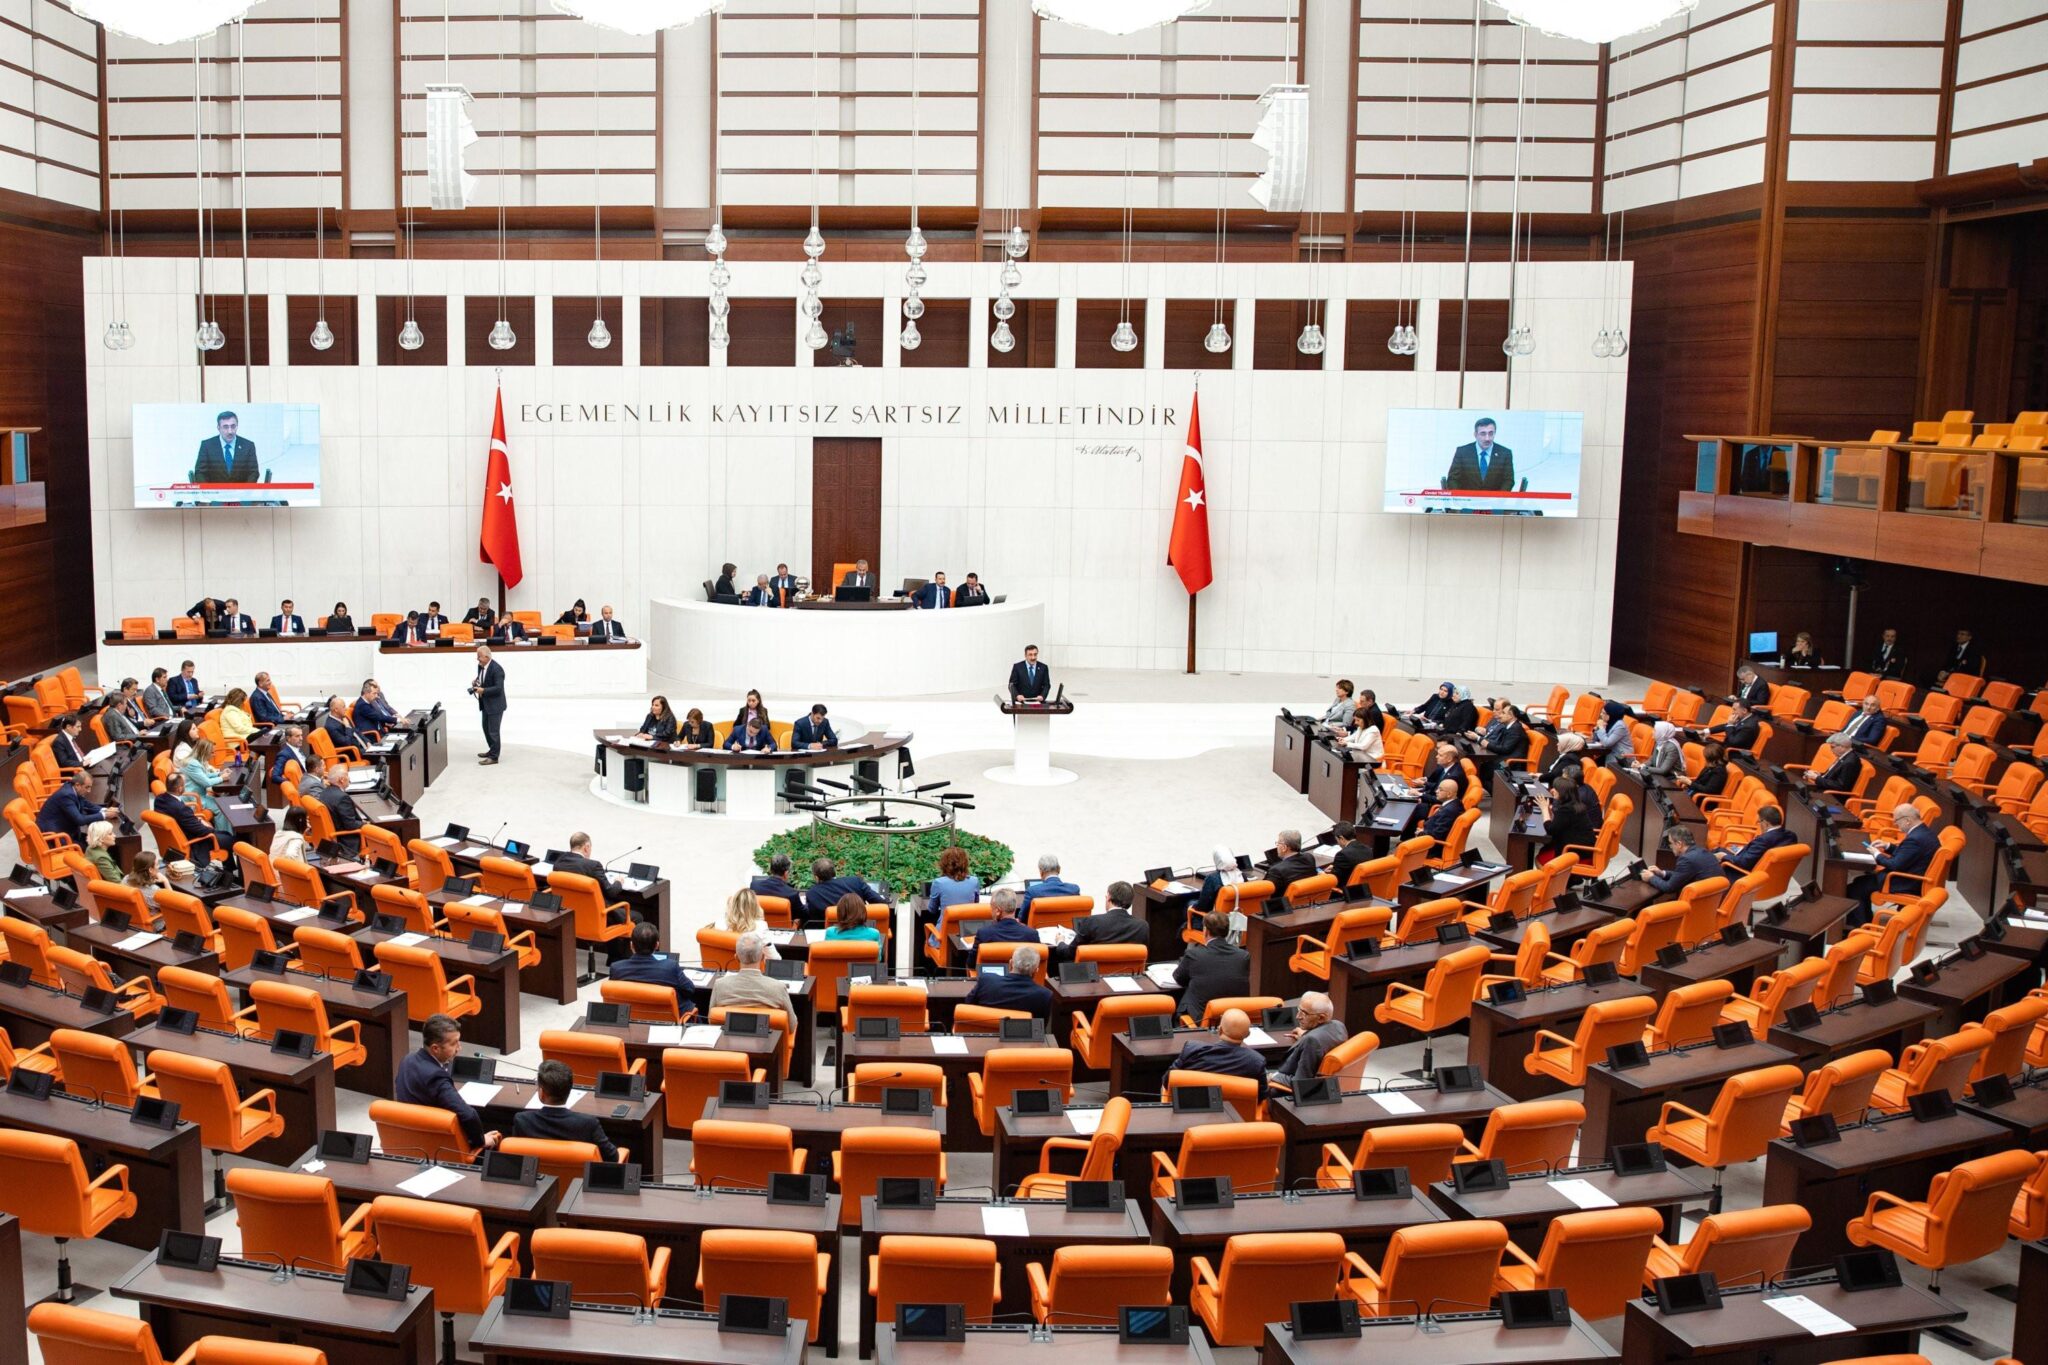 Թուրքիայի խորհրդարանը վավերացրել է ՆԱՏՕ-ին Շվեդիայի անդամակցության արձանագրությունը